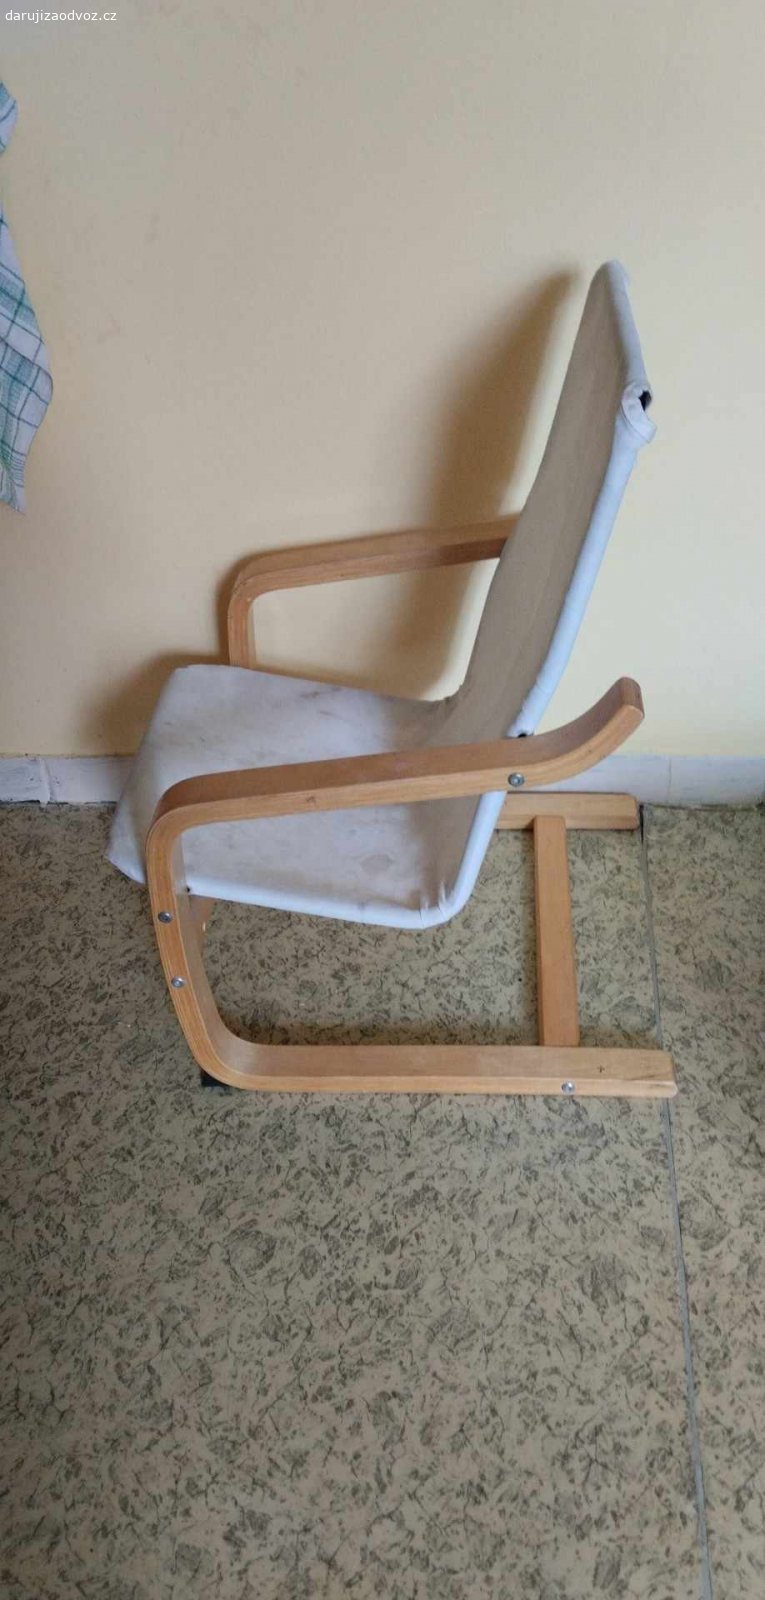 židlička. důvod je nadbytečnost